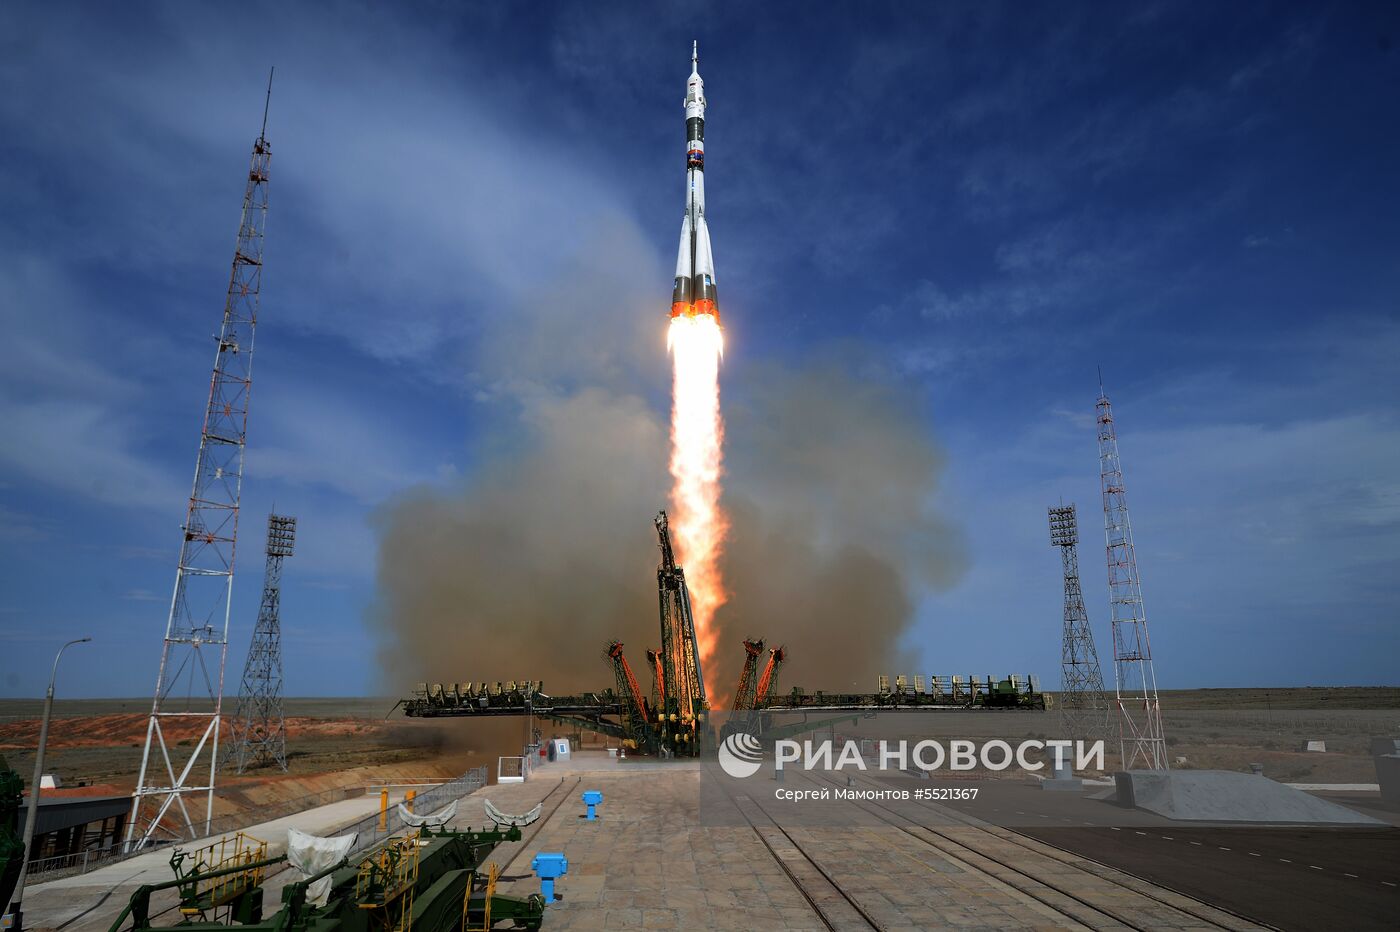 Запуск ТПК  "Союз МС-09" с участниками длительной экспедиции МКС-56/57